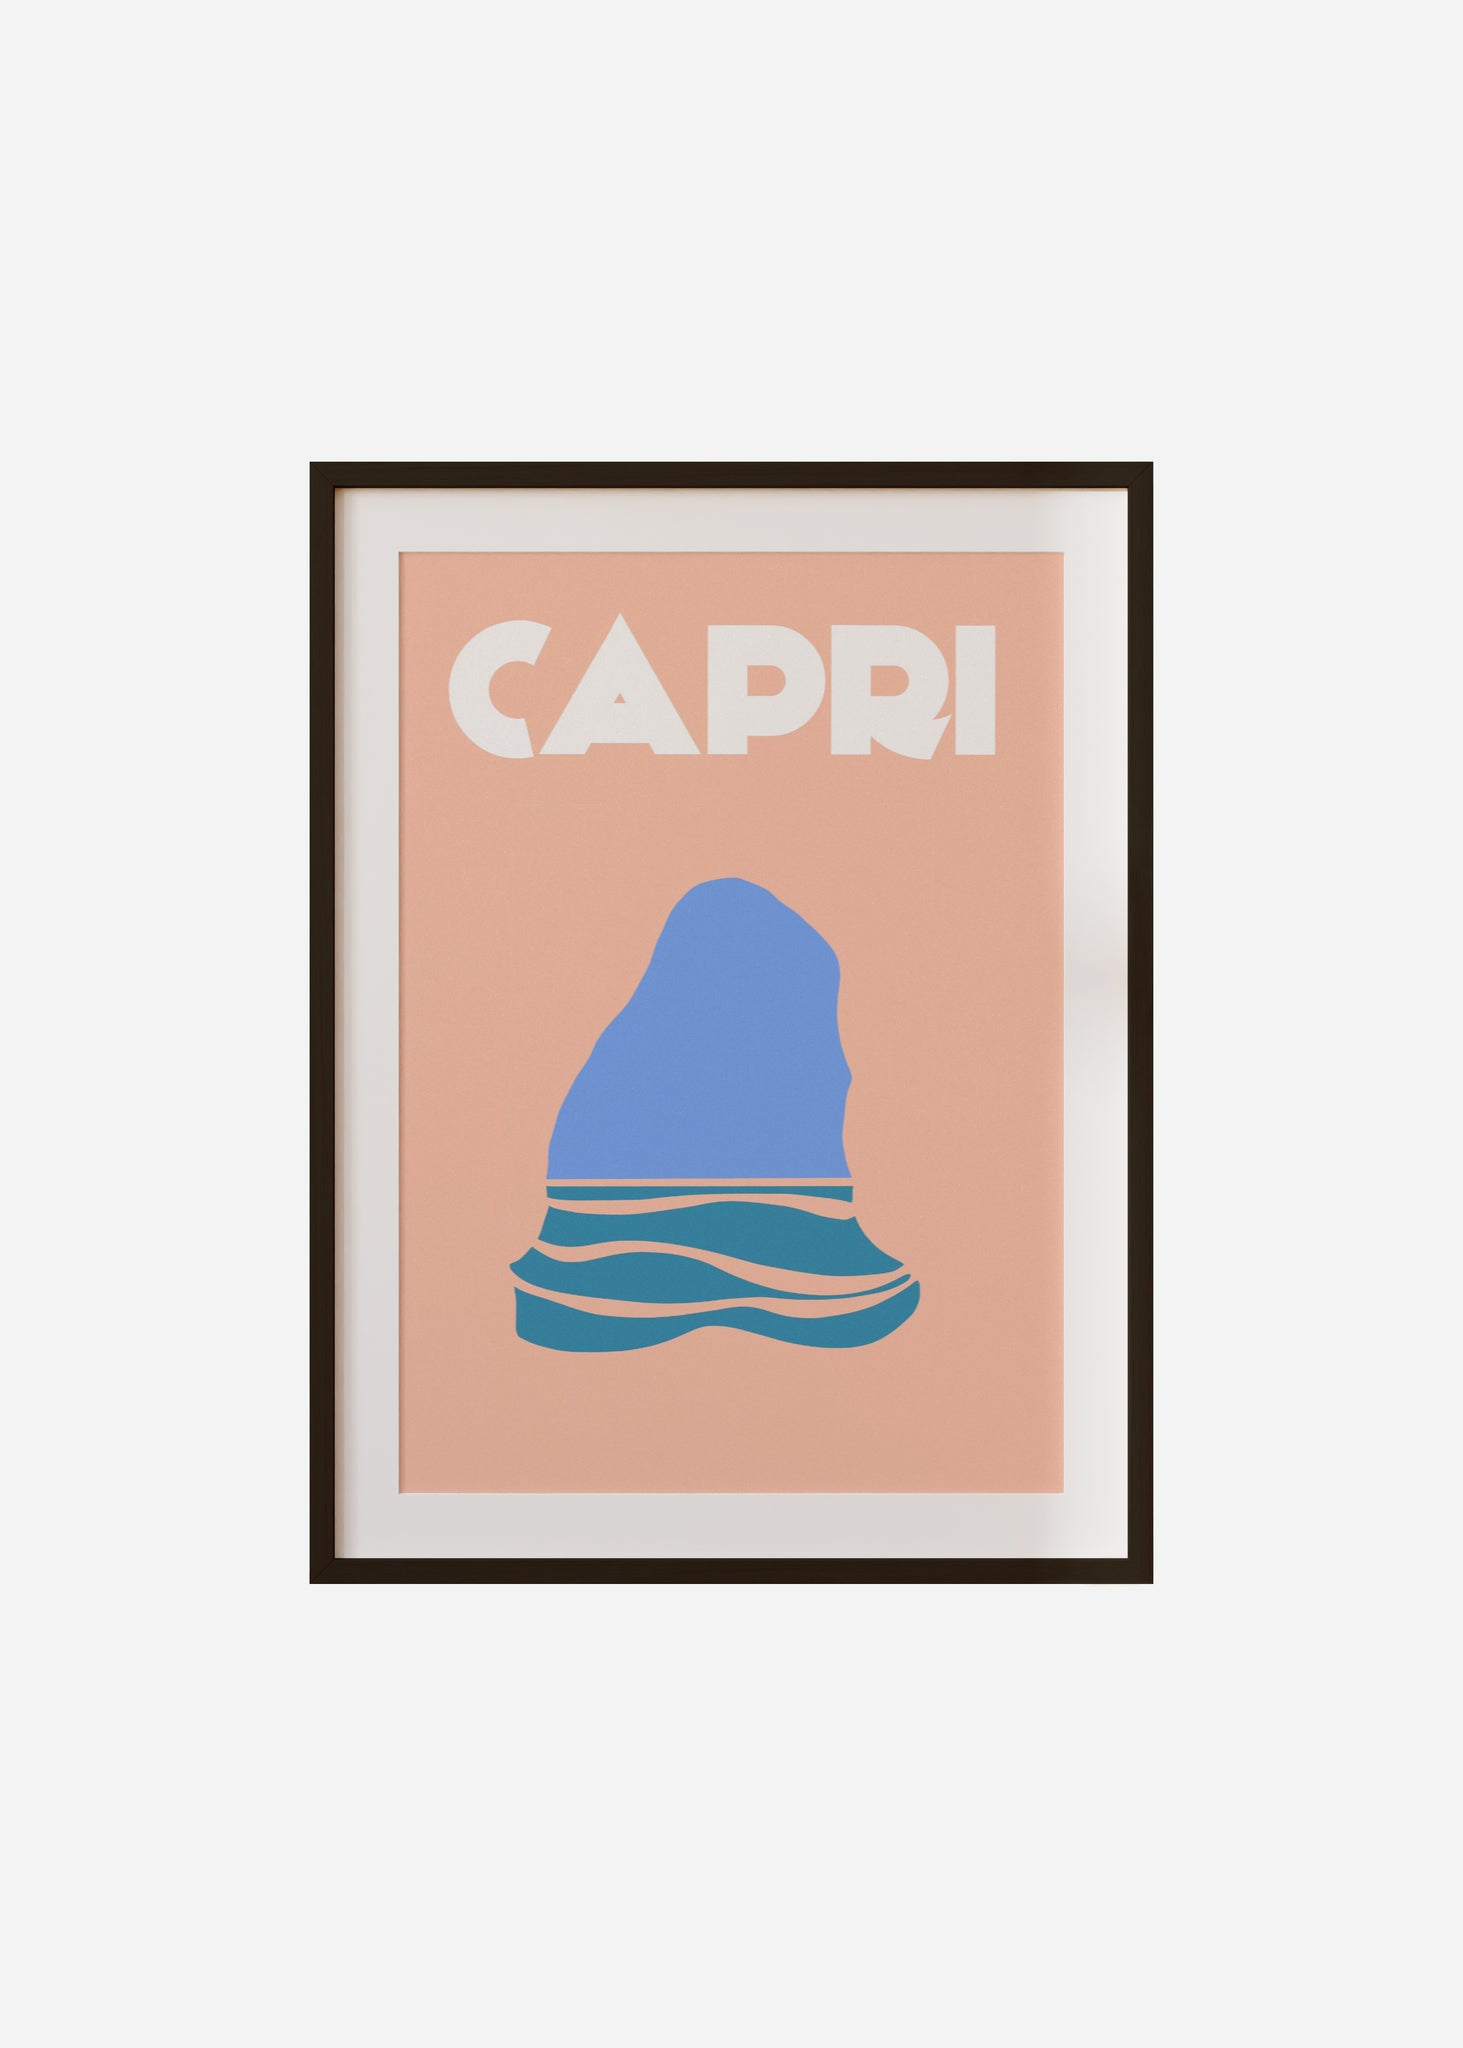 capri Framed & Mounted Print